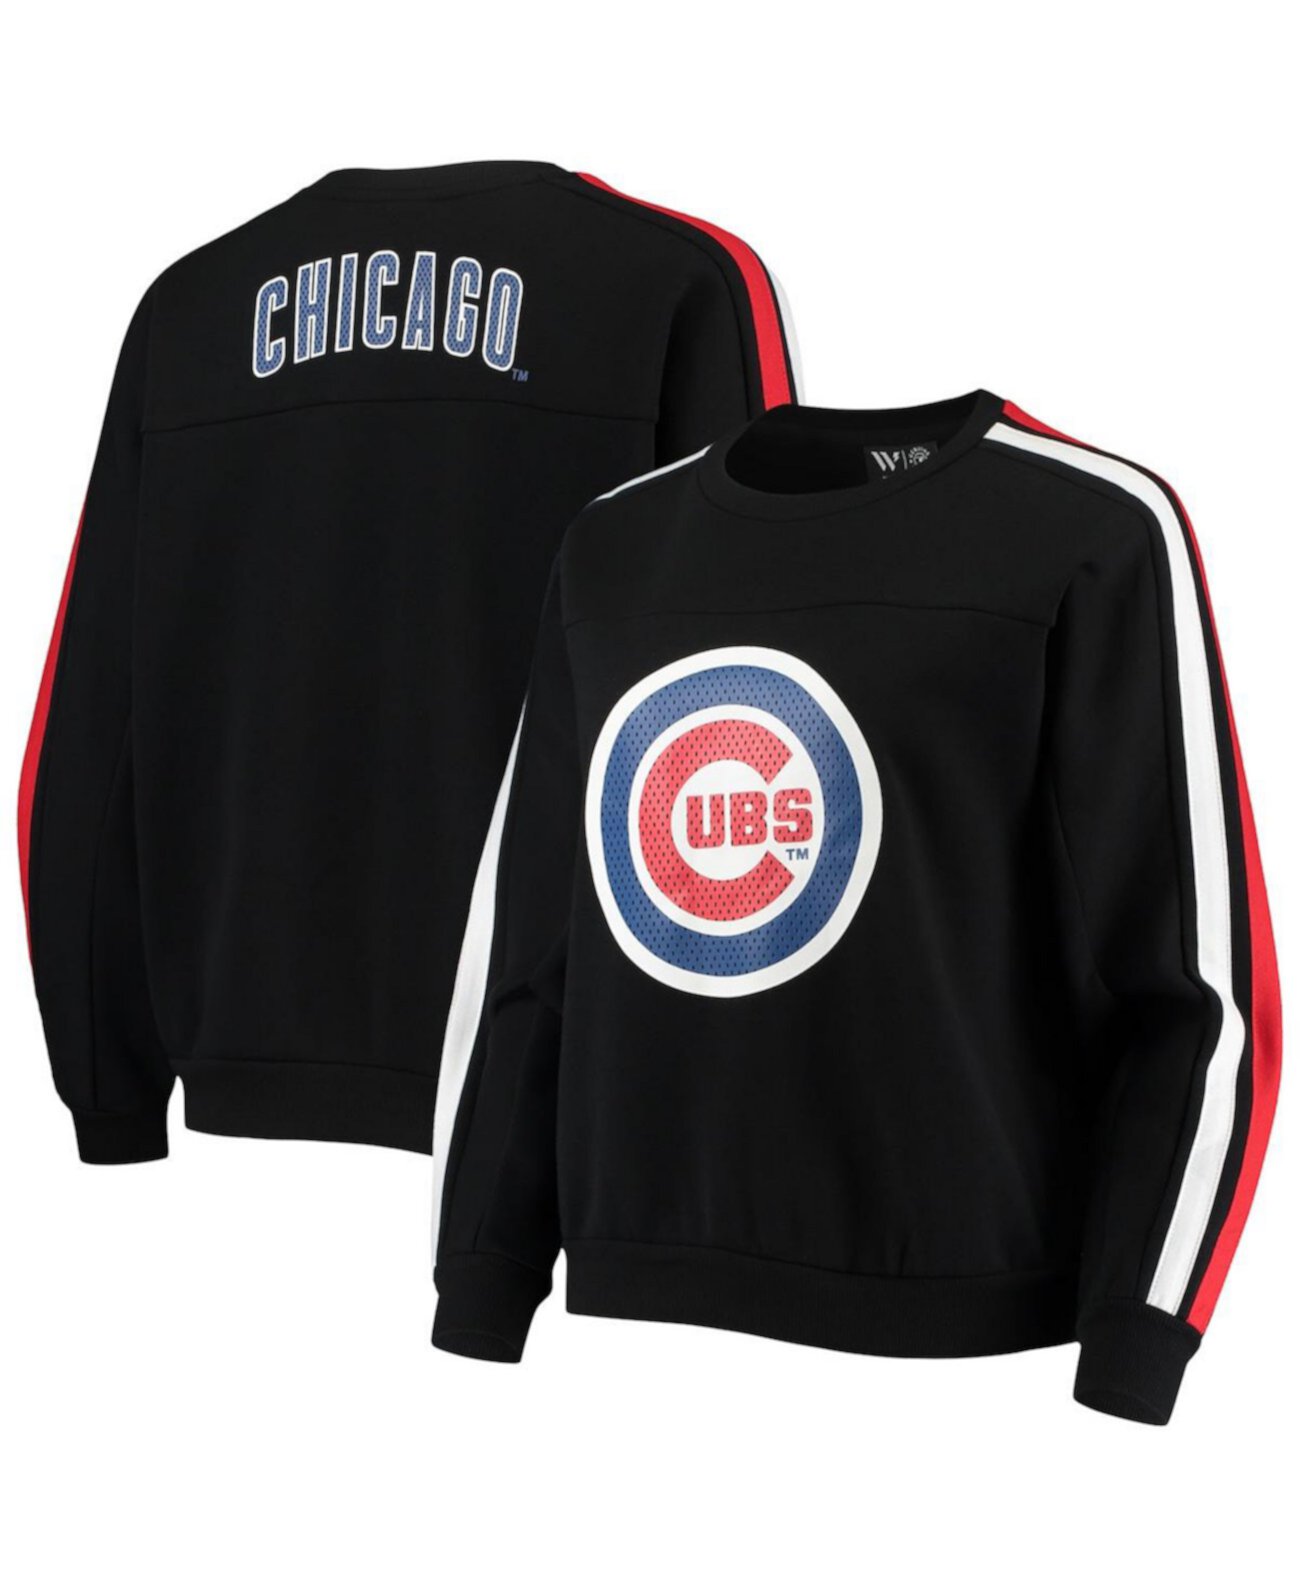 Женская черная толстовка с перфорированным логотипом Chicago Cubs The Wild Collective